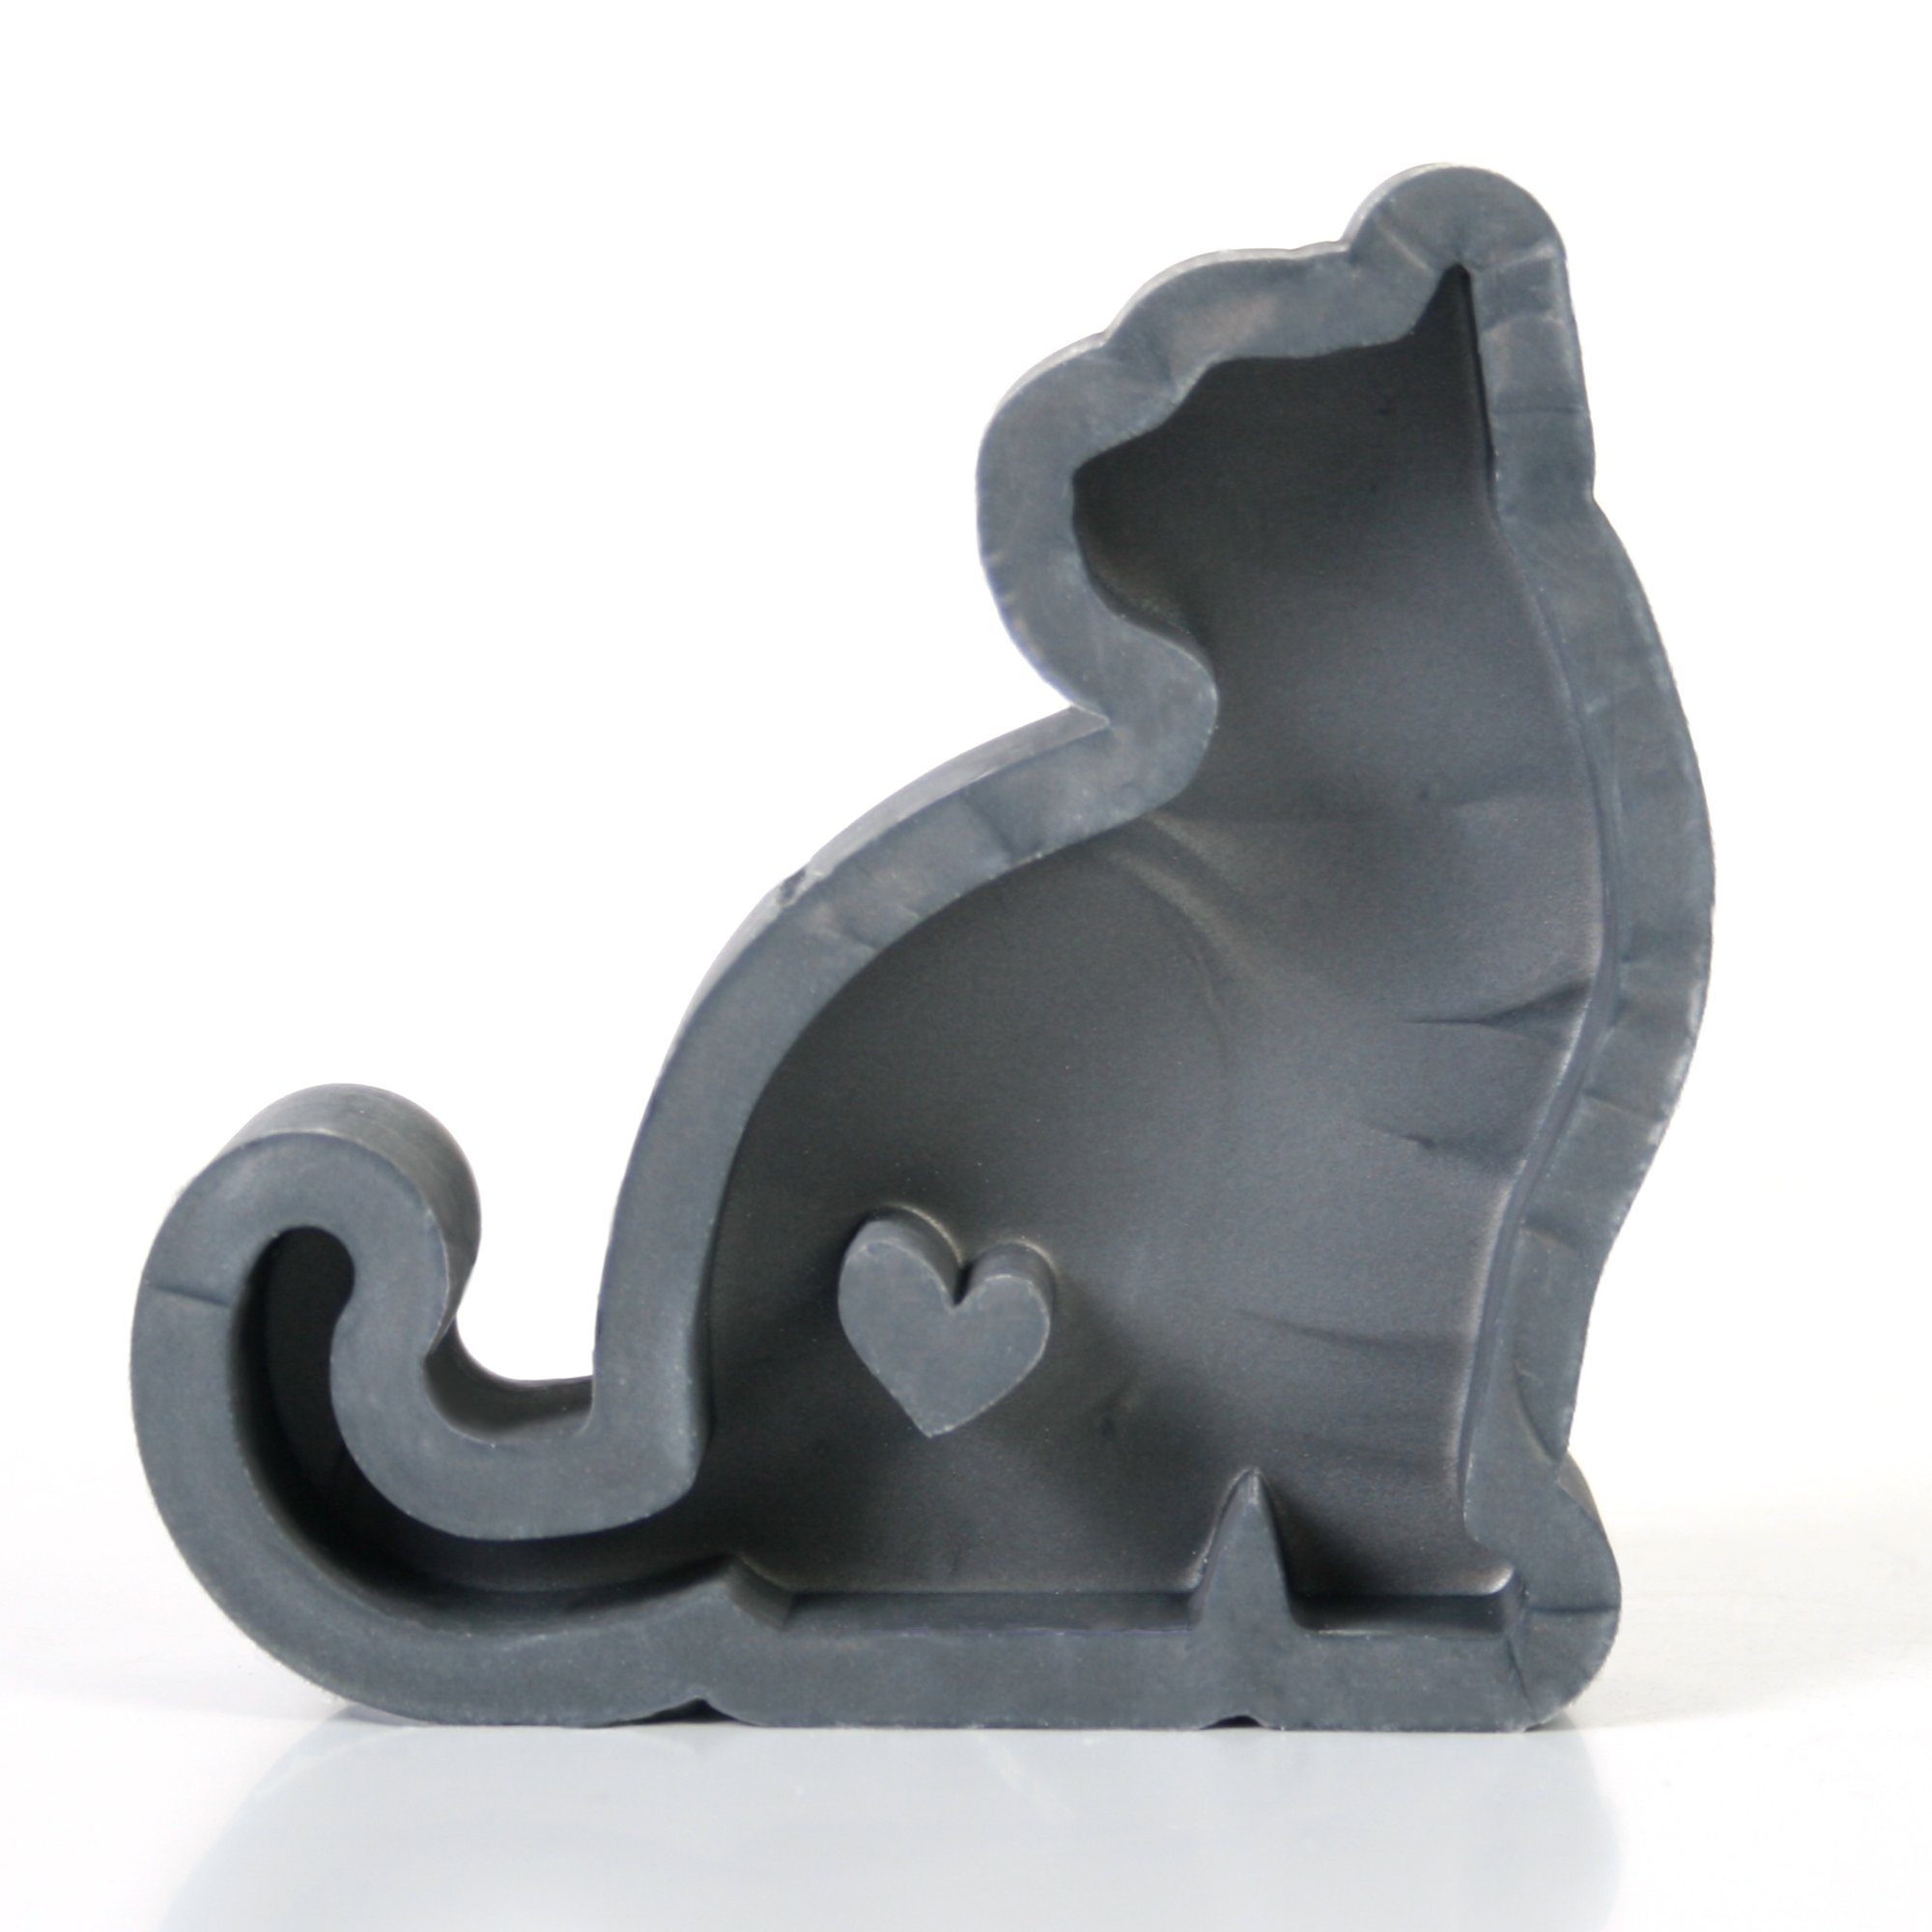 Kreative Feder Silikonform „Katze“ aus hochwertigem Silikon zum Basteln mit Beton, Harz, Wachs..., aus hochwertigem Silikon aus Deutschland